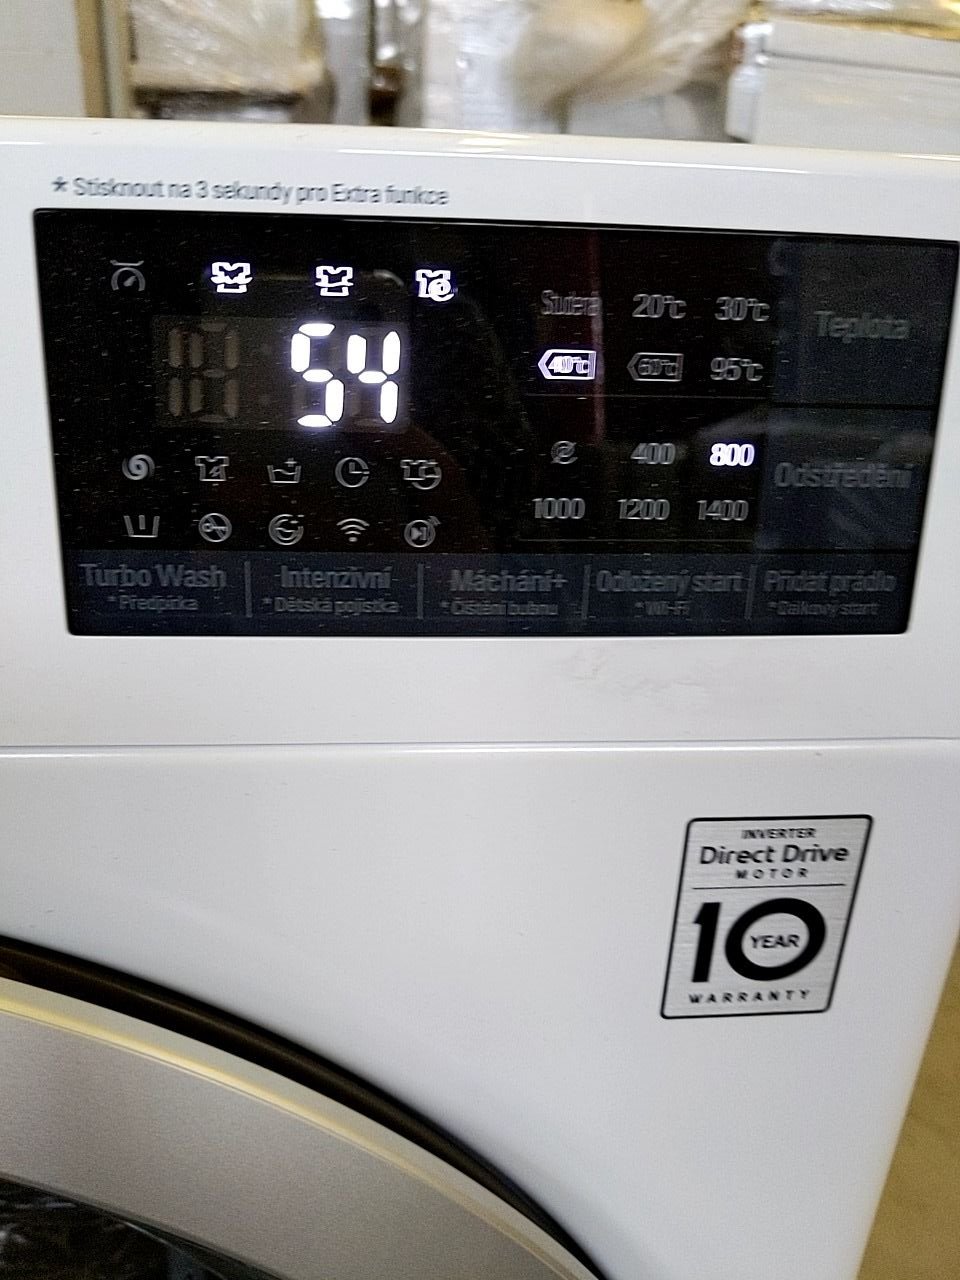 Pračka LG F4TURBO9S